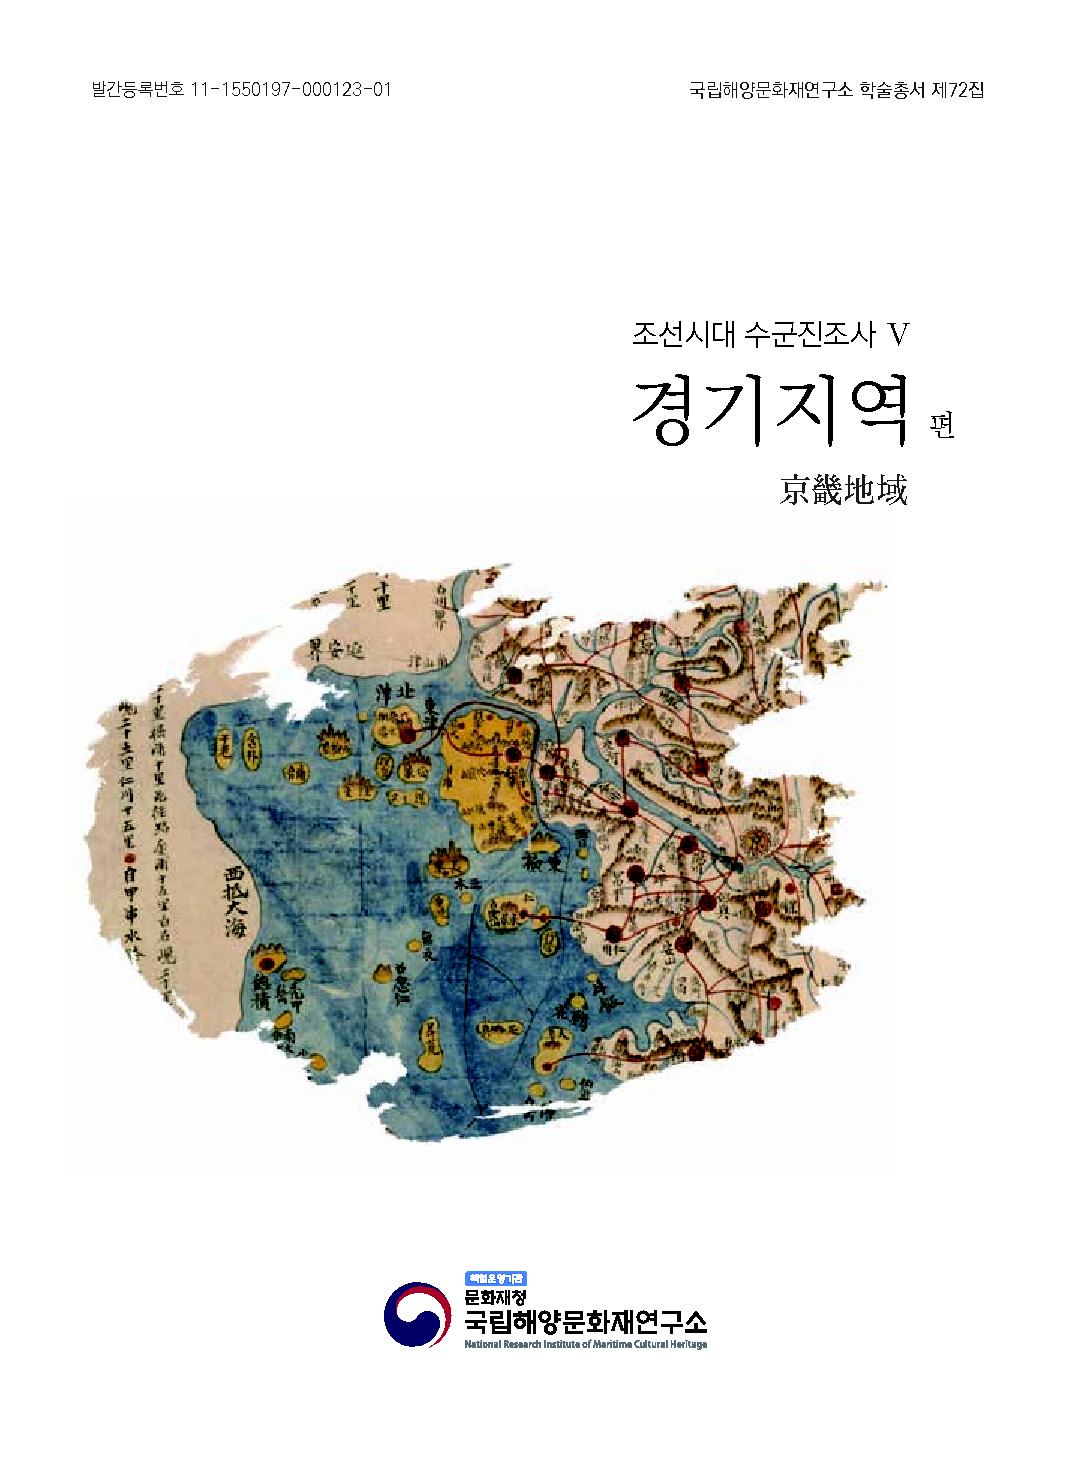 조선시대 수군진조사보고서 5-경기지역 바로가기 링크